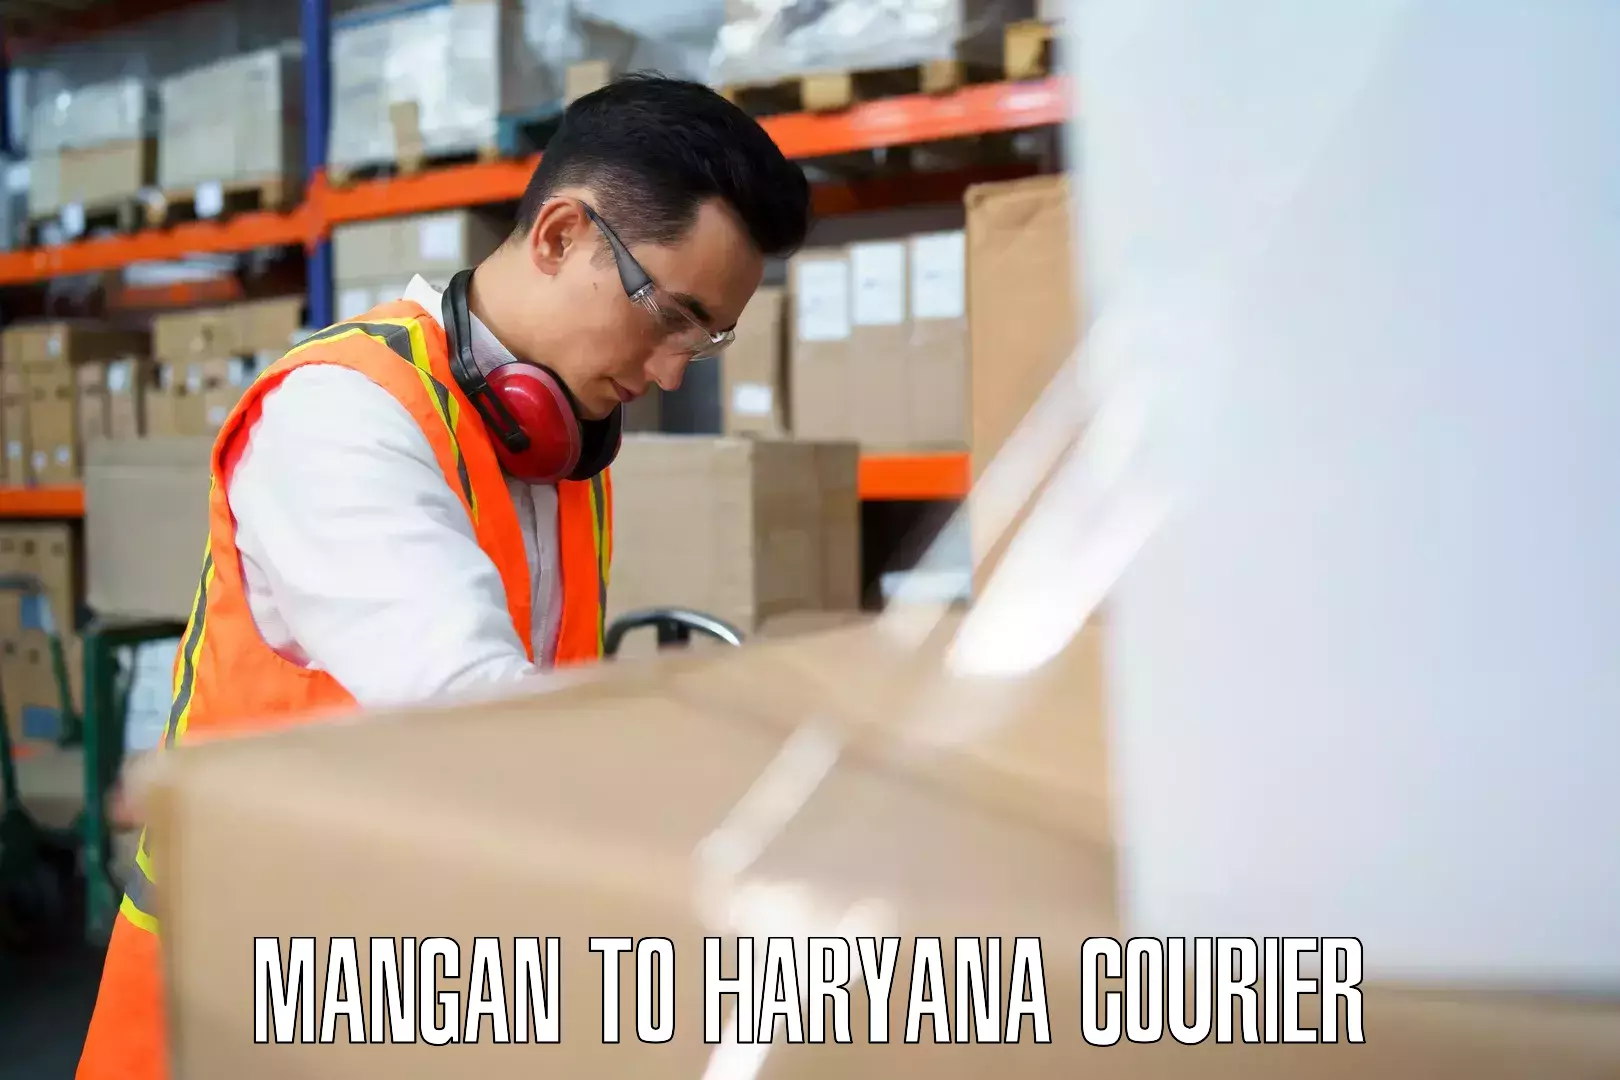 Baggage shipping experts Mangan to Haryana